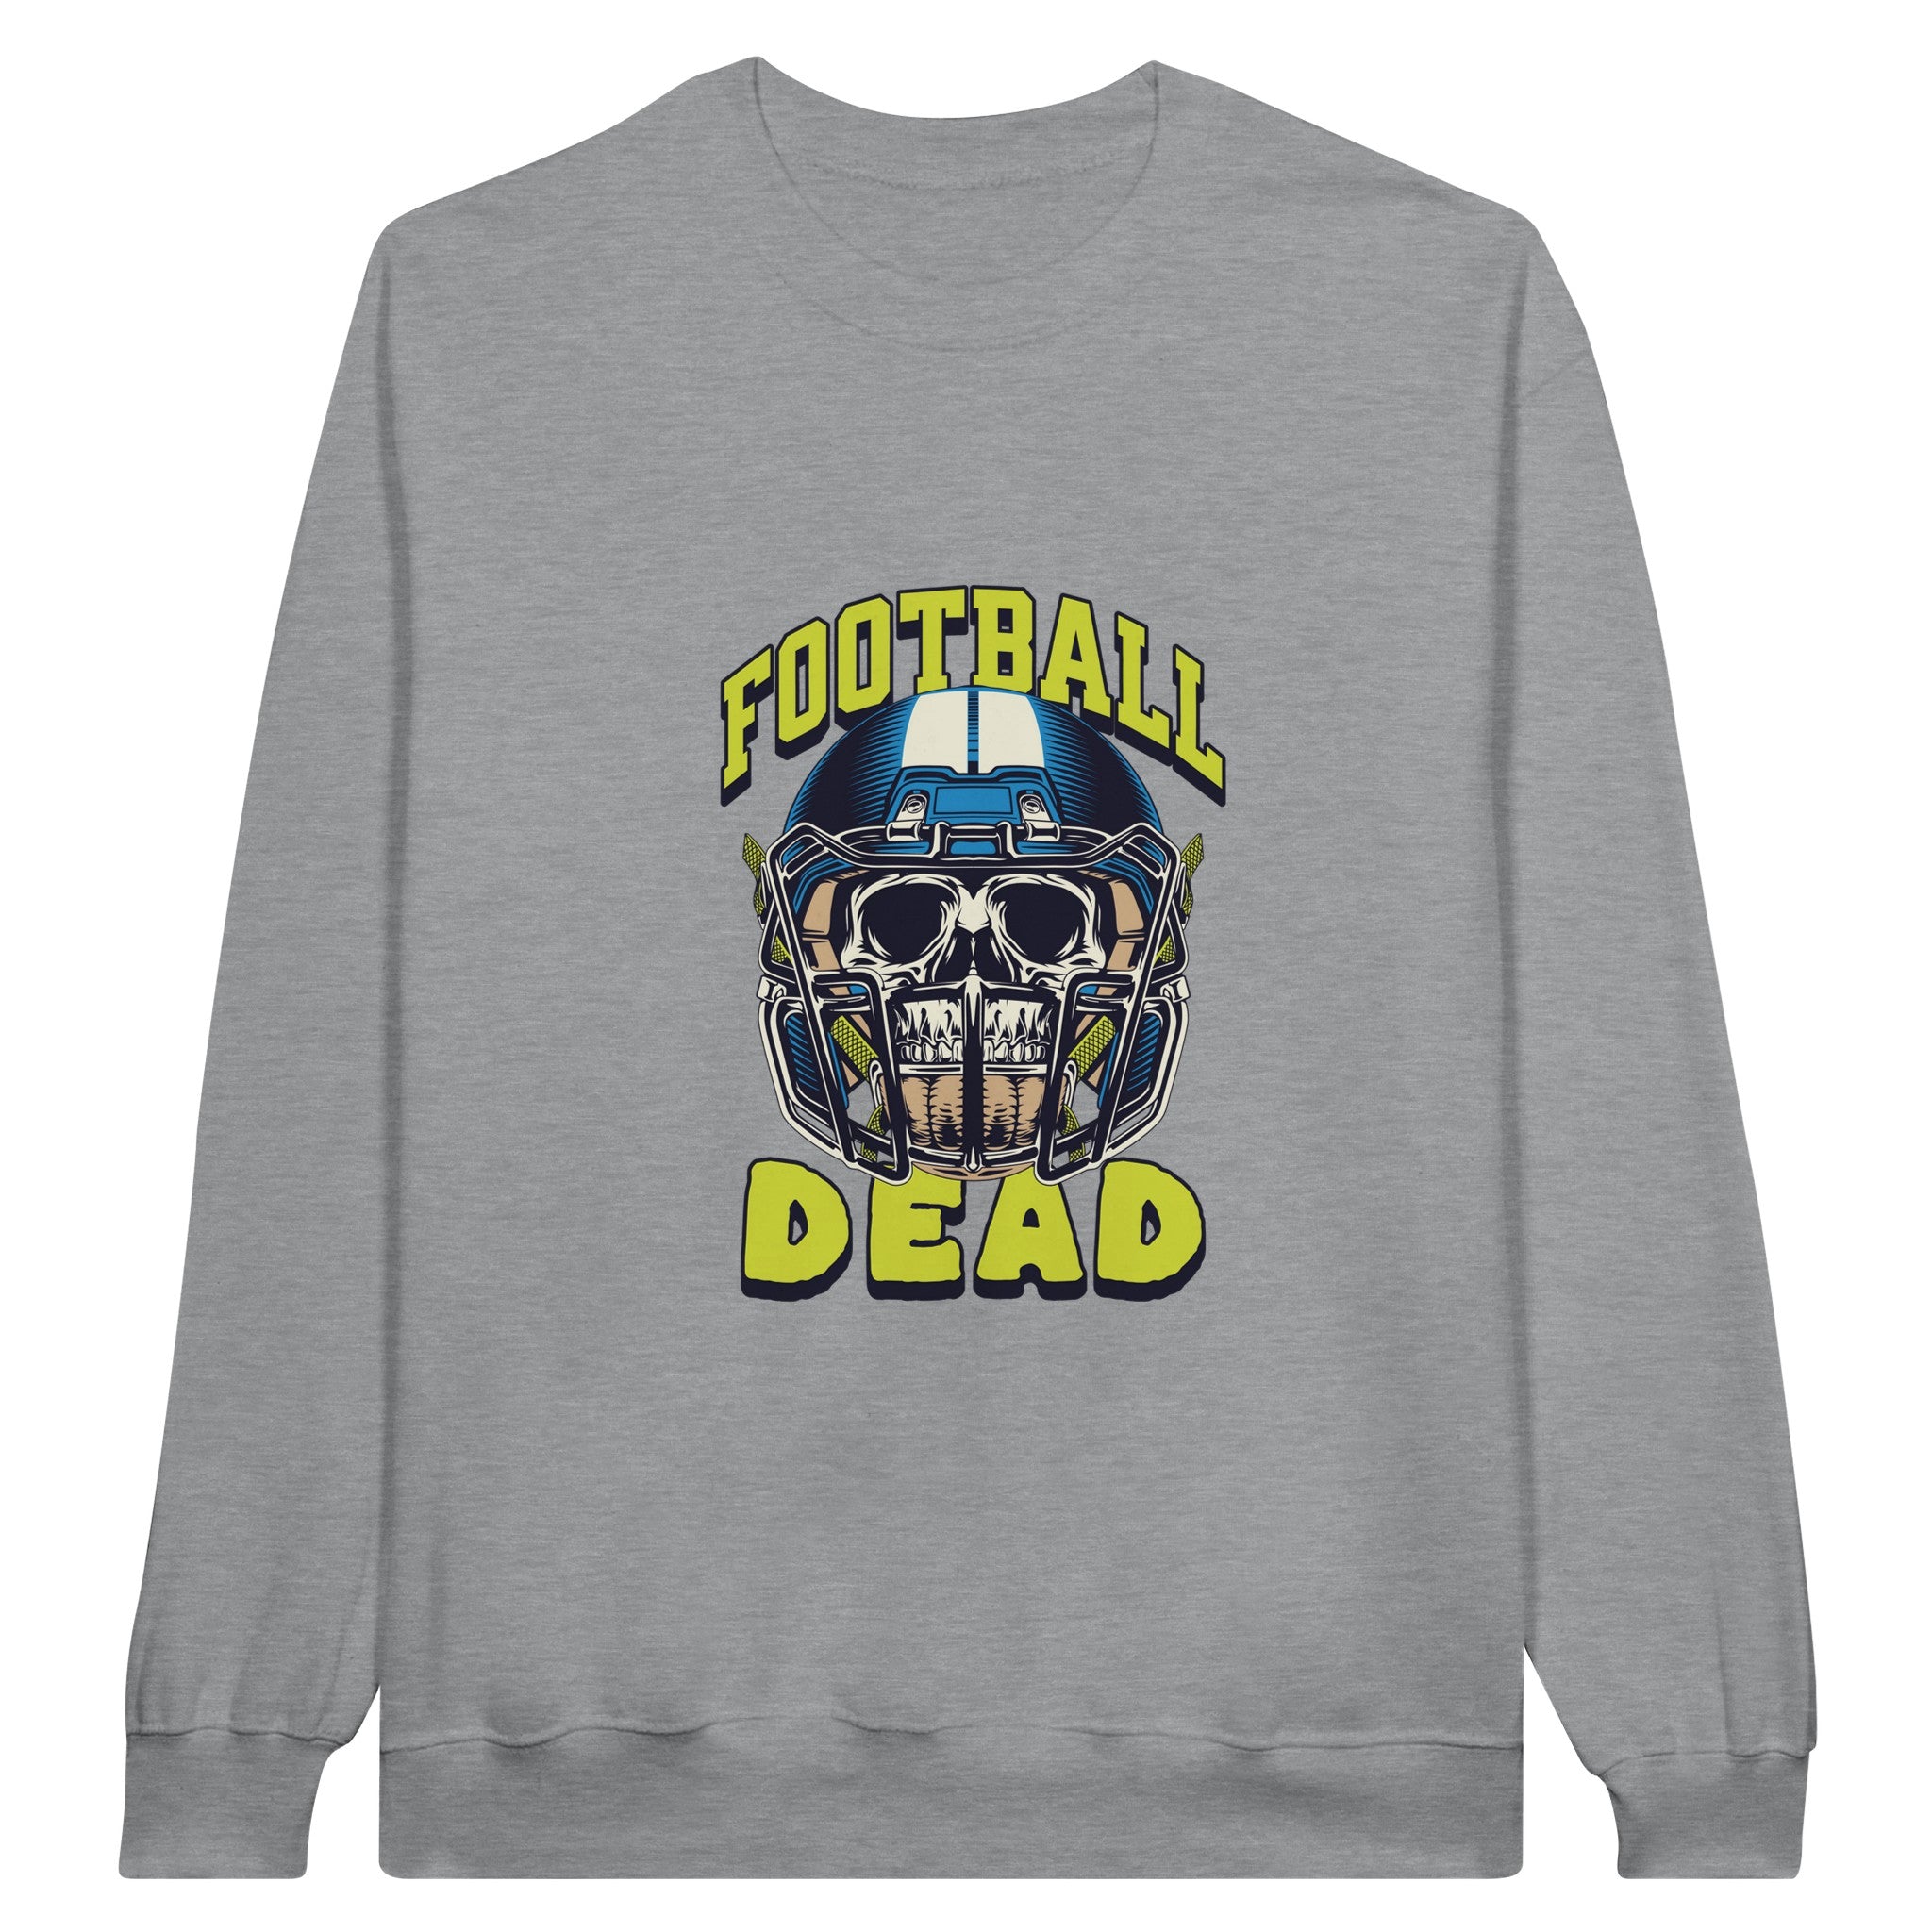 SORTYGO - Football Dead Men Sweatshirt in Sports Grey